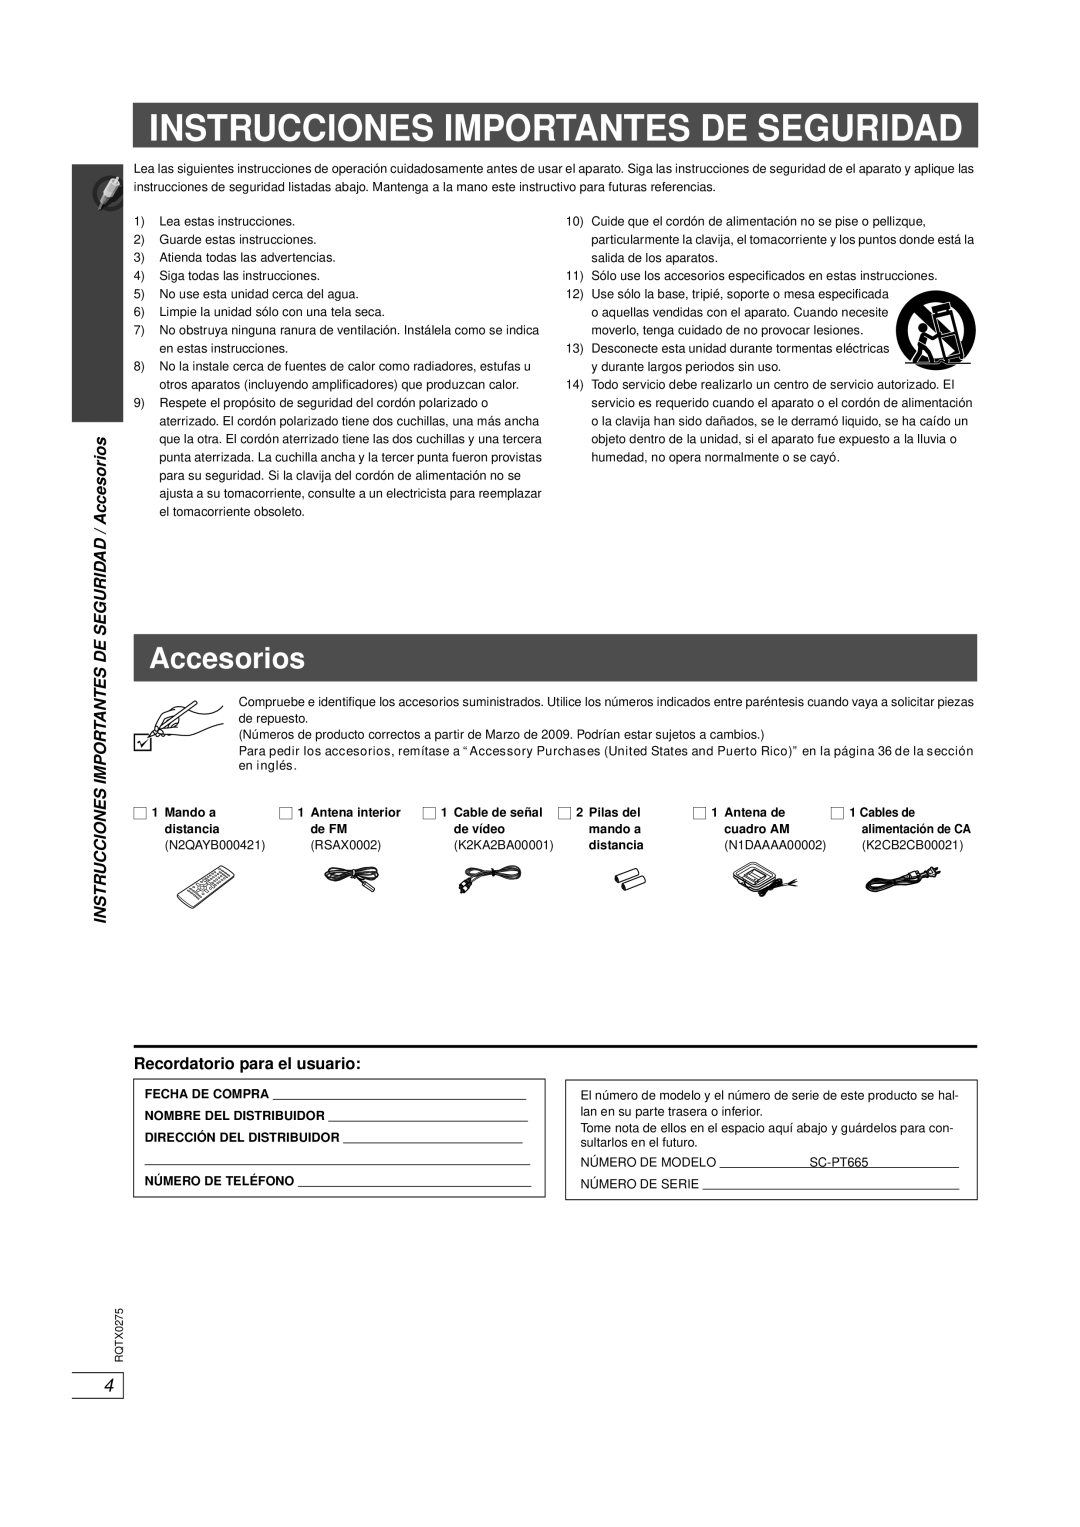 Panasonic SC-PT665 manual Instrucciones Importantes De Seguridad, SEGURIDAD / Accesorios, Recordatorio para el usuario 